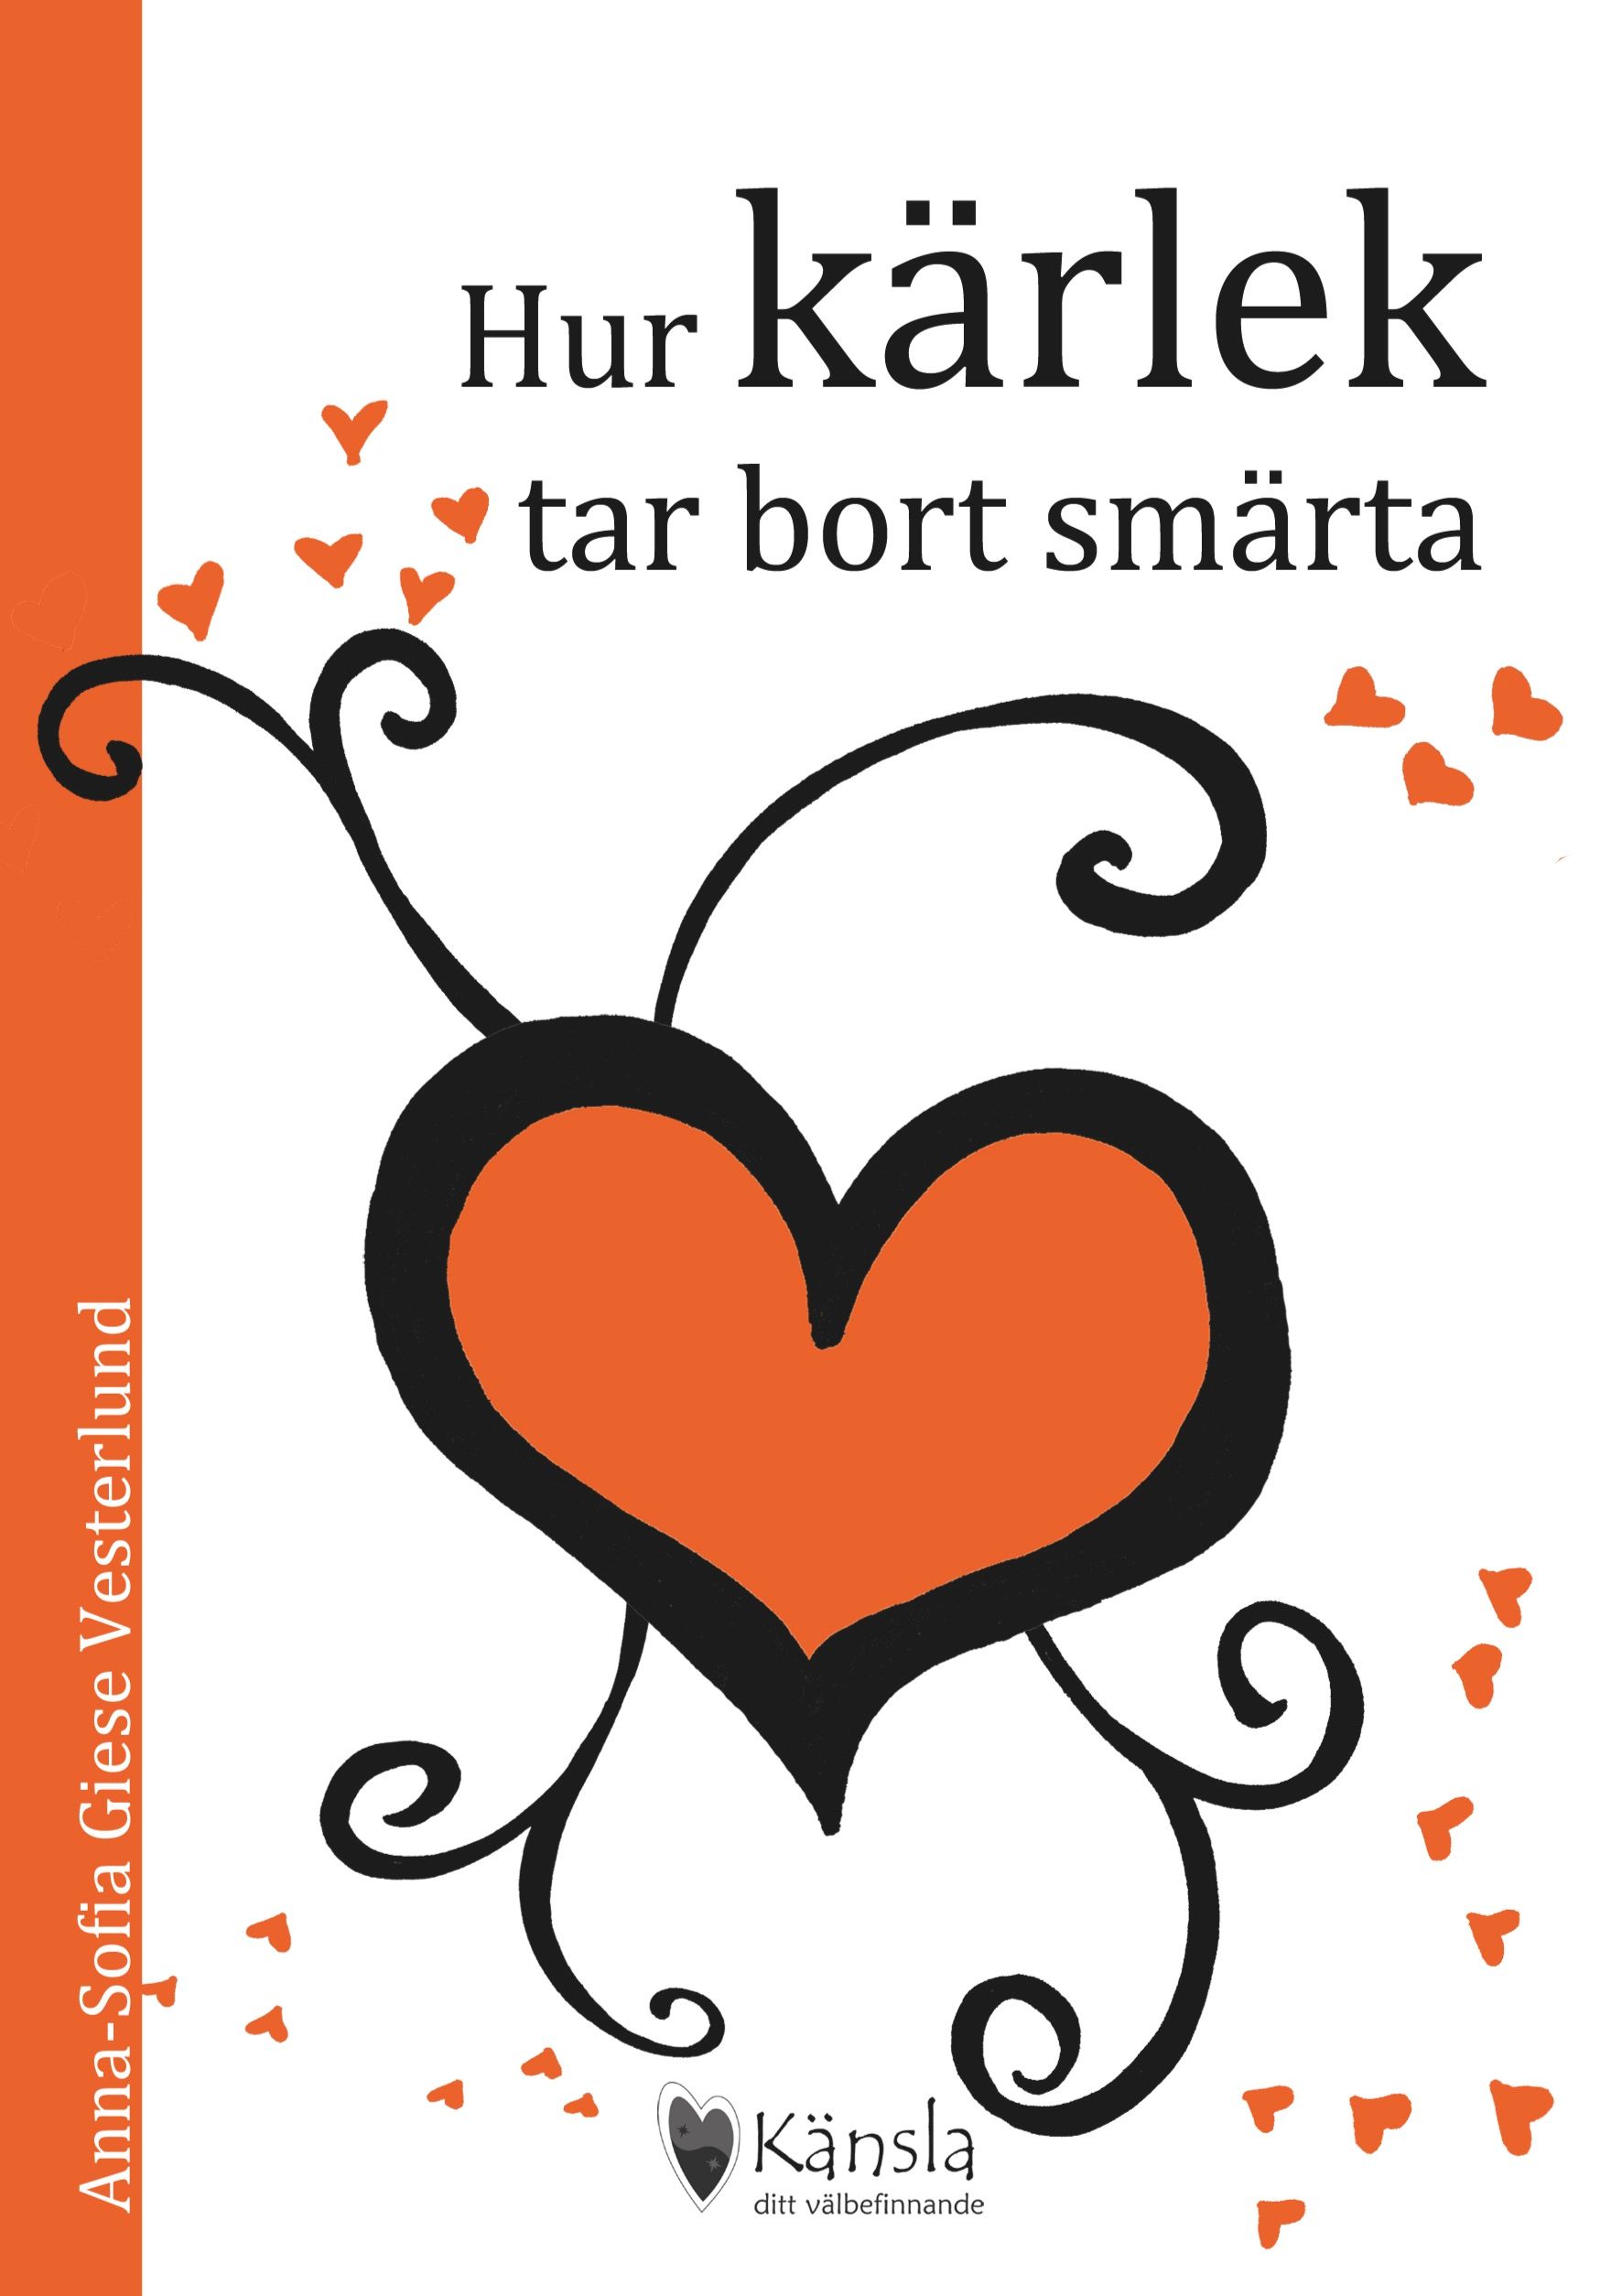 Hur kärlek tar bort smärta, e-bog af Anna-Sofia Giese Vesterlund